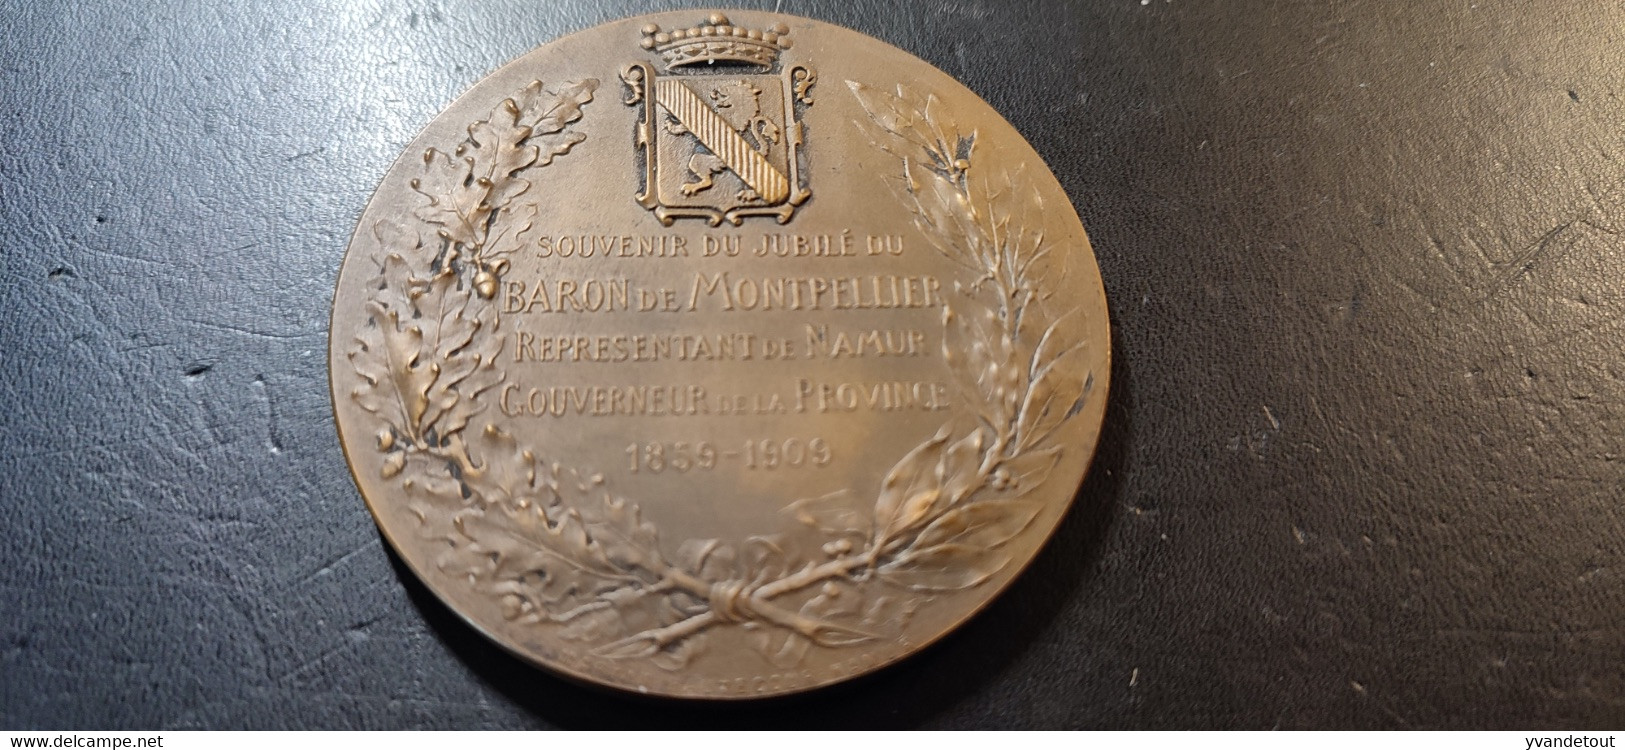 Médaille Souvenir Du Jubilé Du Baron De Montpellier, Représentant De Namur Gouverneur De La Province 1859-1909 - Belgium